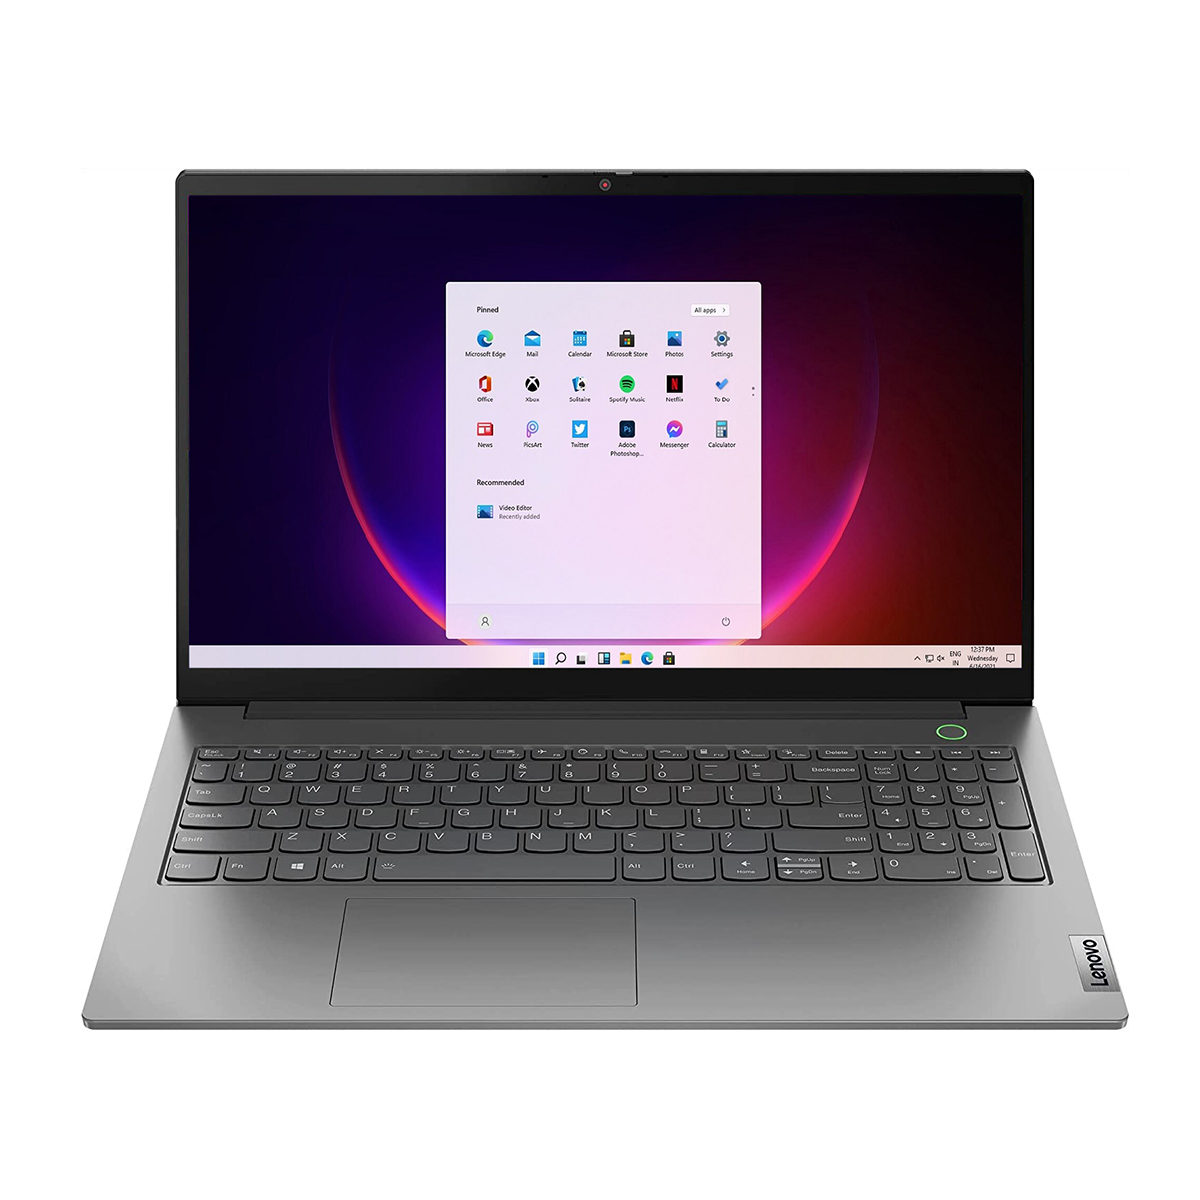 قیمت لپ تاپ لنوو 15.6 اینچی مدل Thinkbook 15 G2ITL i7 8GB 256GB SSD مشخصات